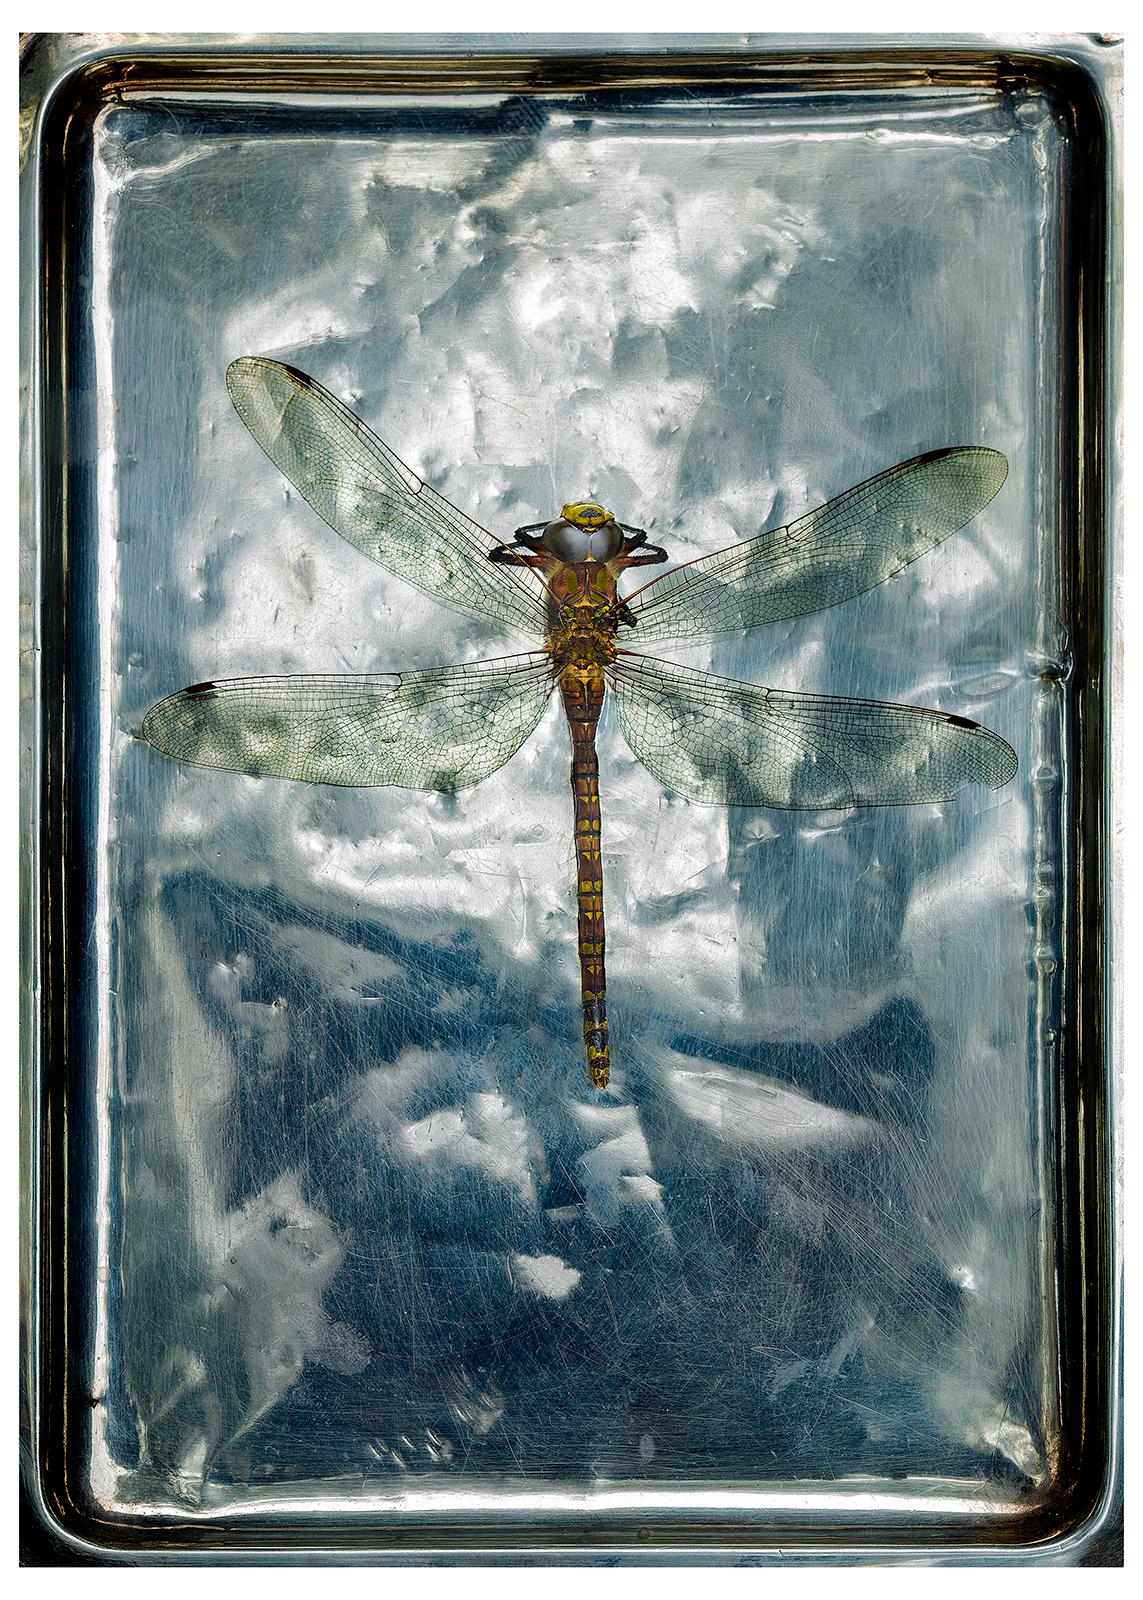 Schmetterling – signierter Naturdruck in limitierter Auflage, Stillleben-Farbfoto, Insekt